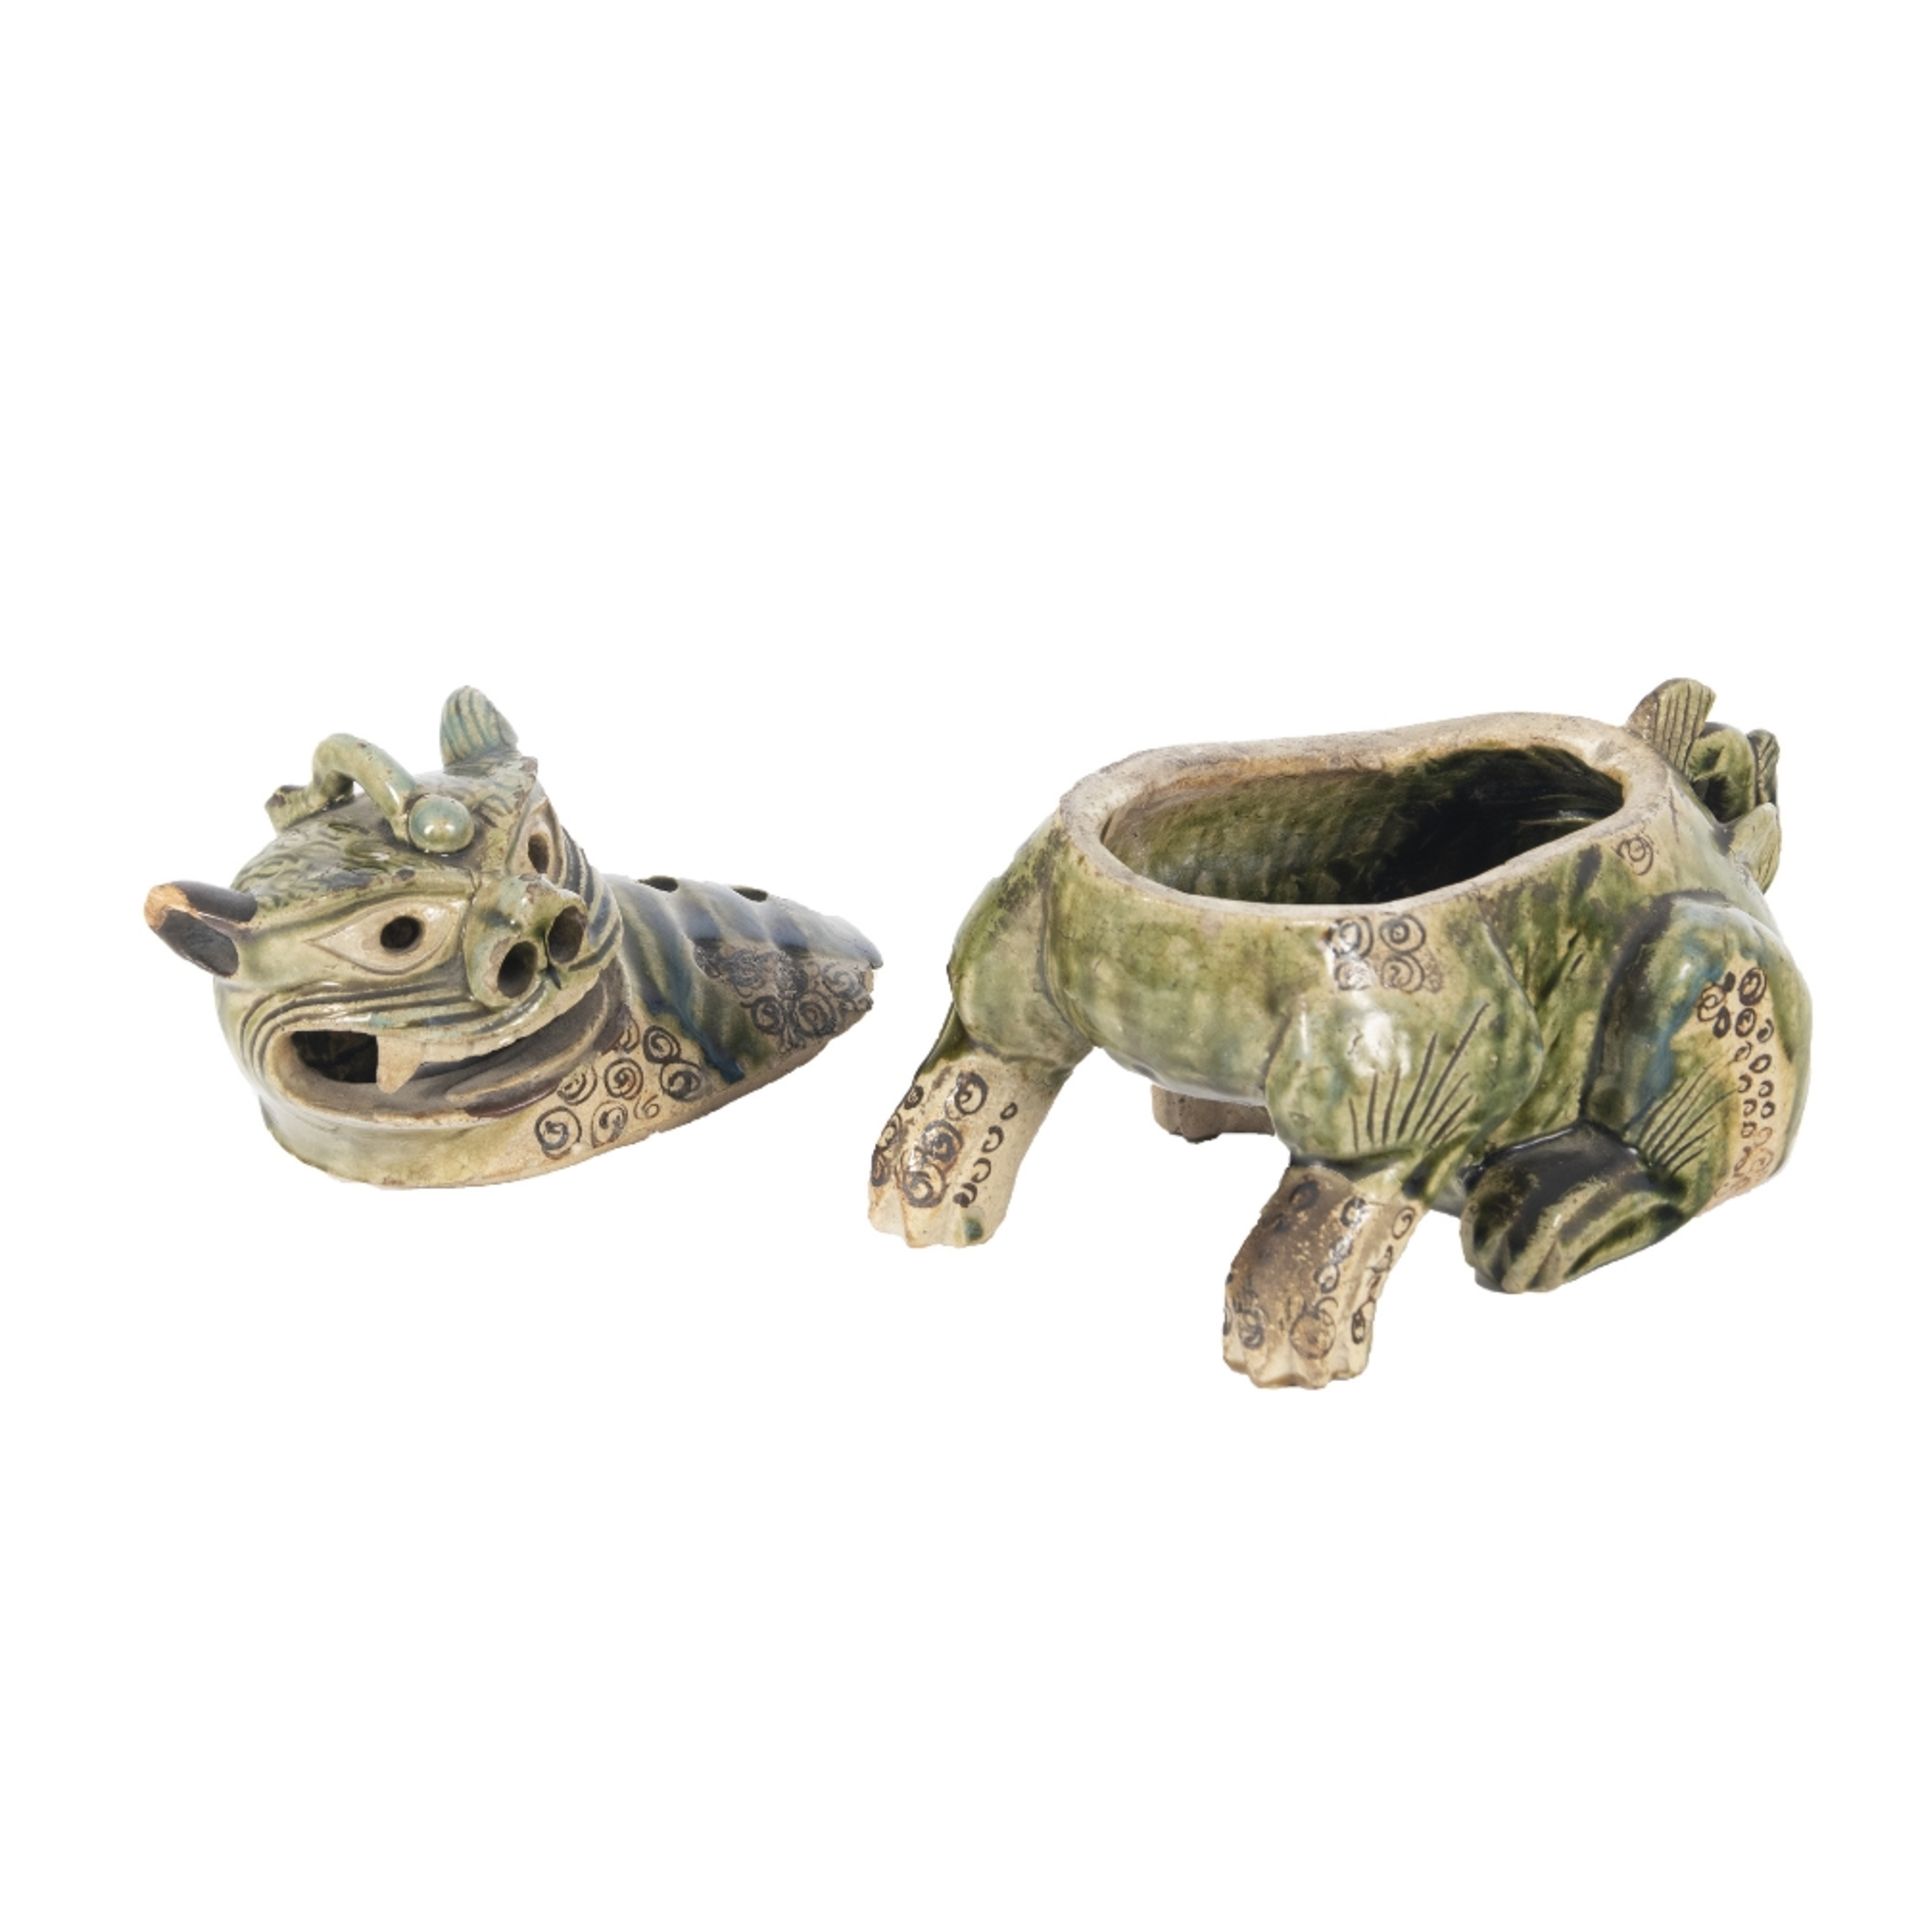 Incensario diseño furia en cerámica esmaltada. China, s.XIX. - Bild 2 aus 3